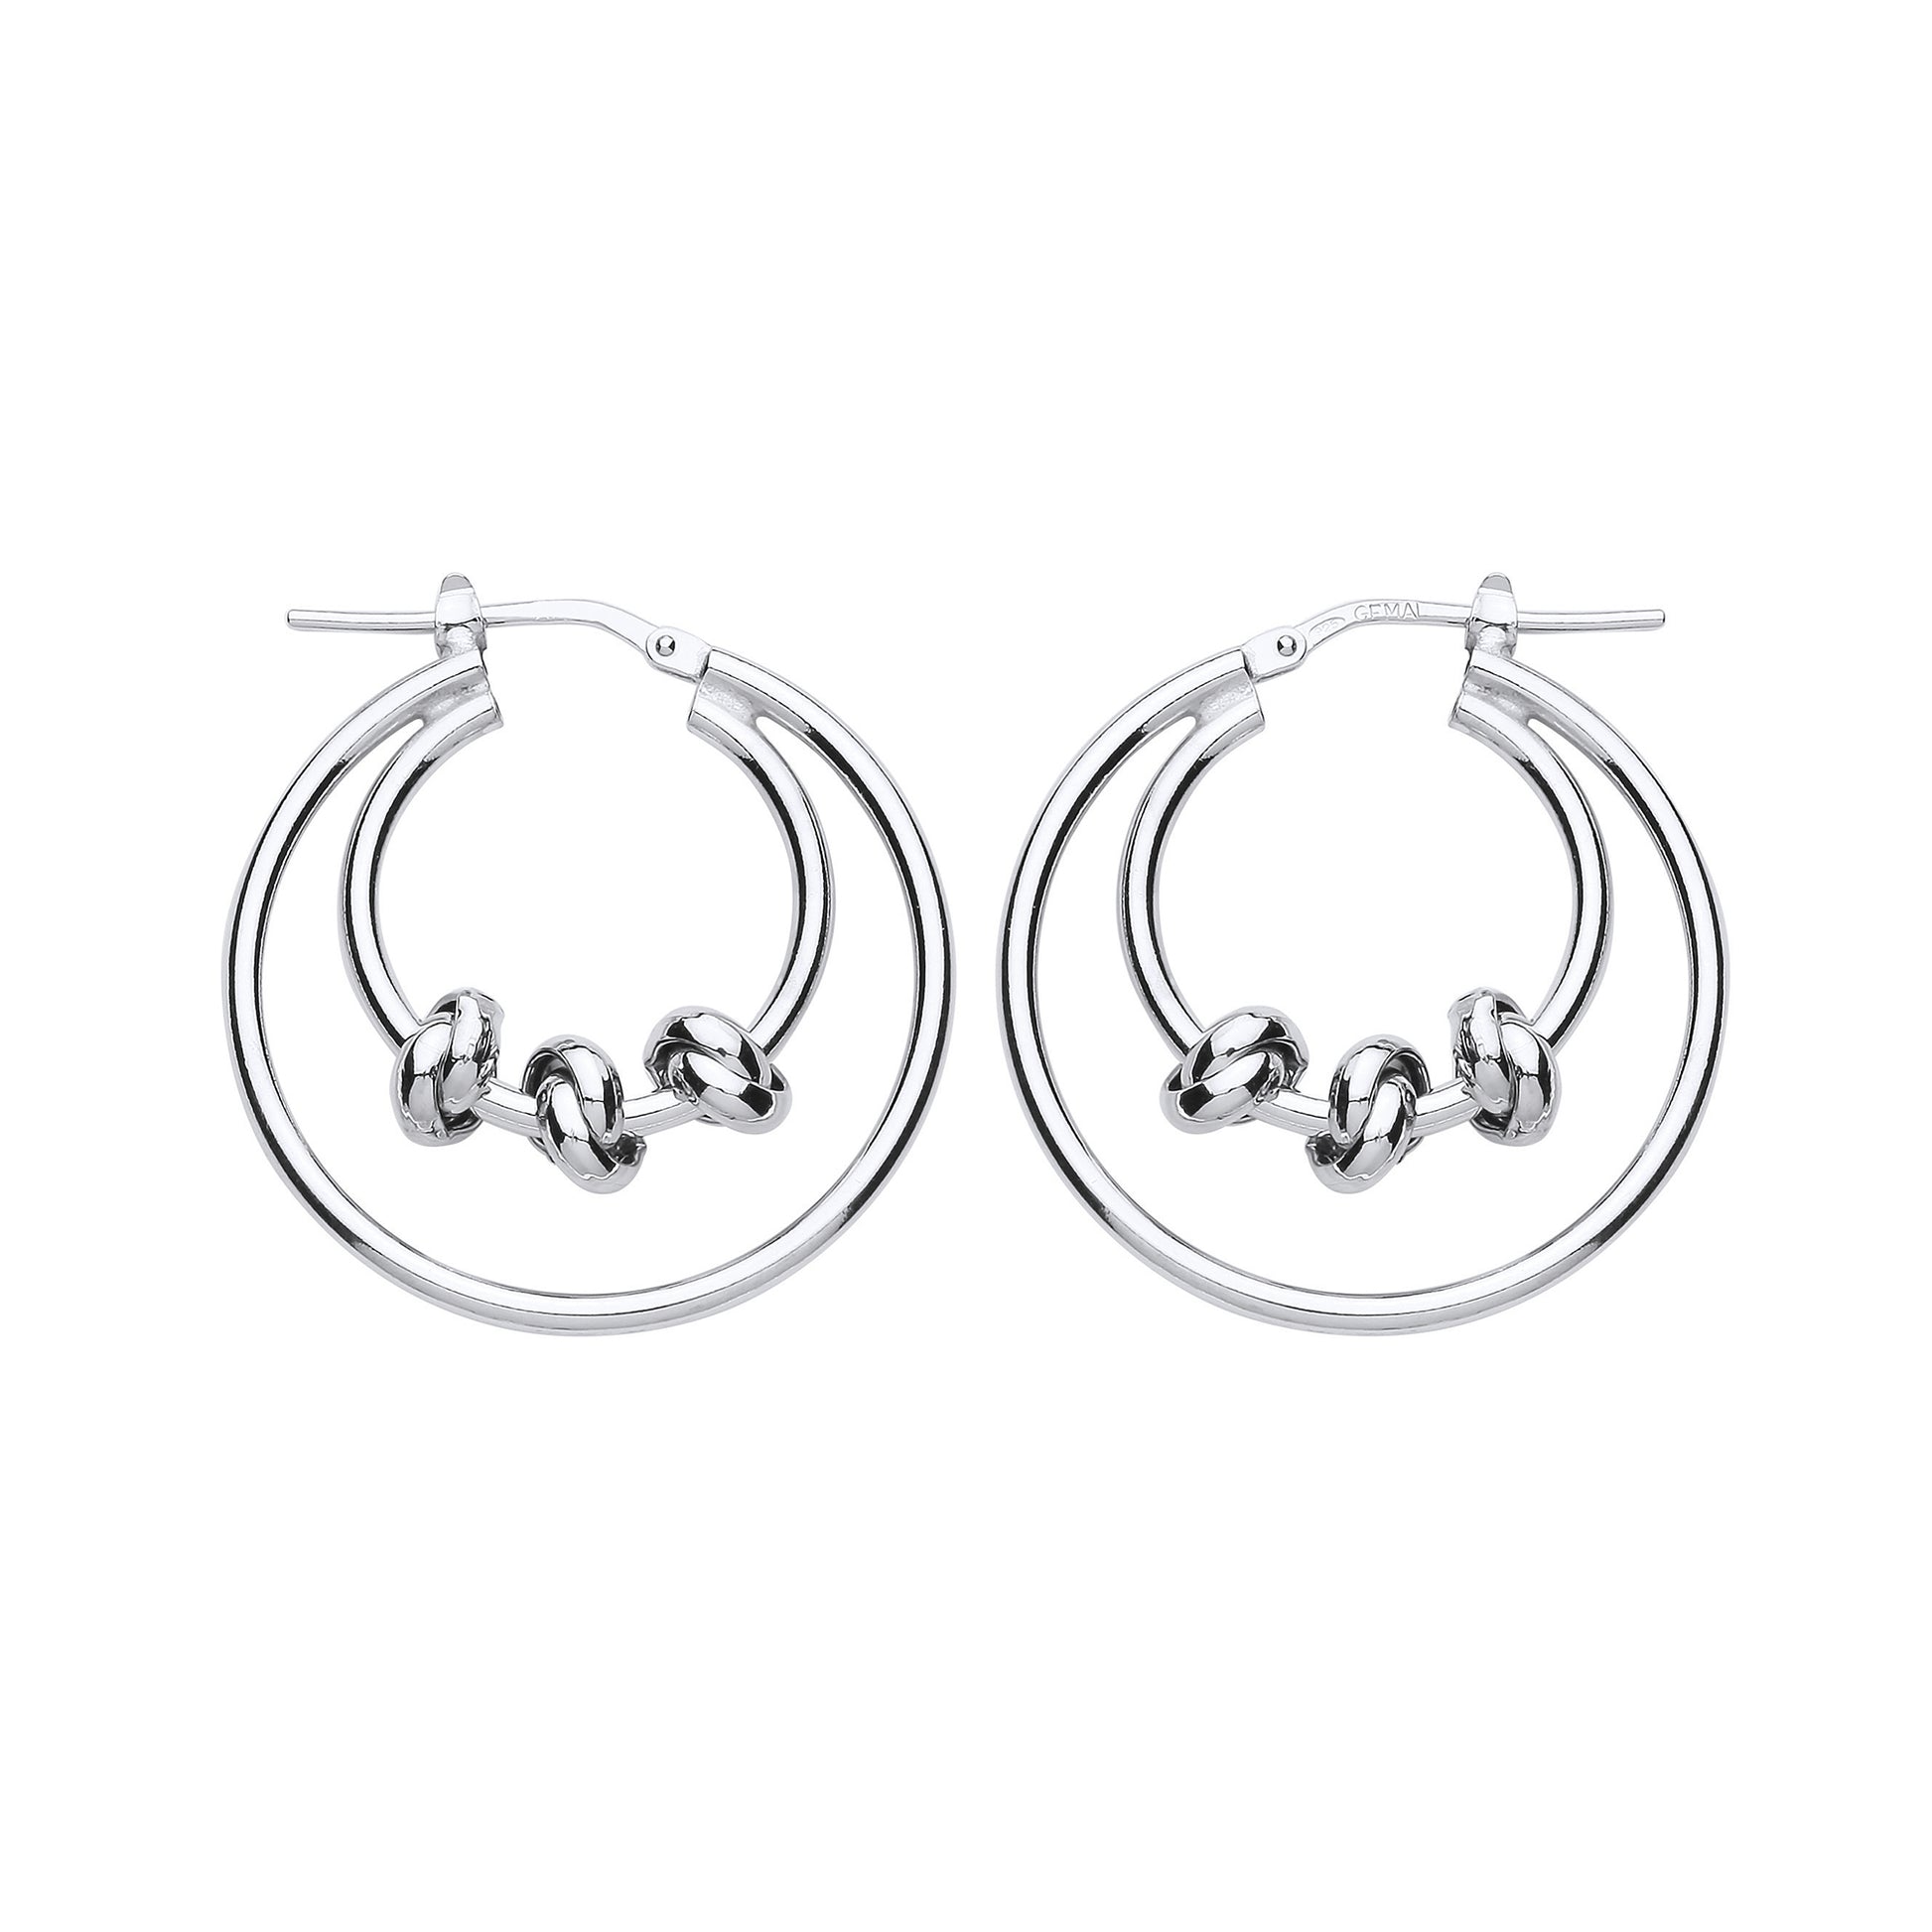 Silver  Triple Knot Double Hoop Earrings 29mm - ER84